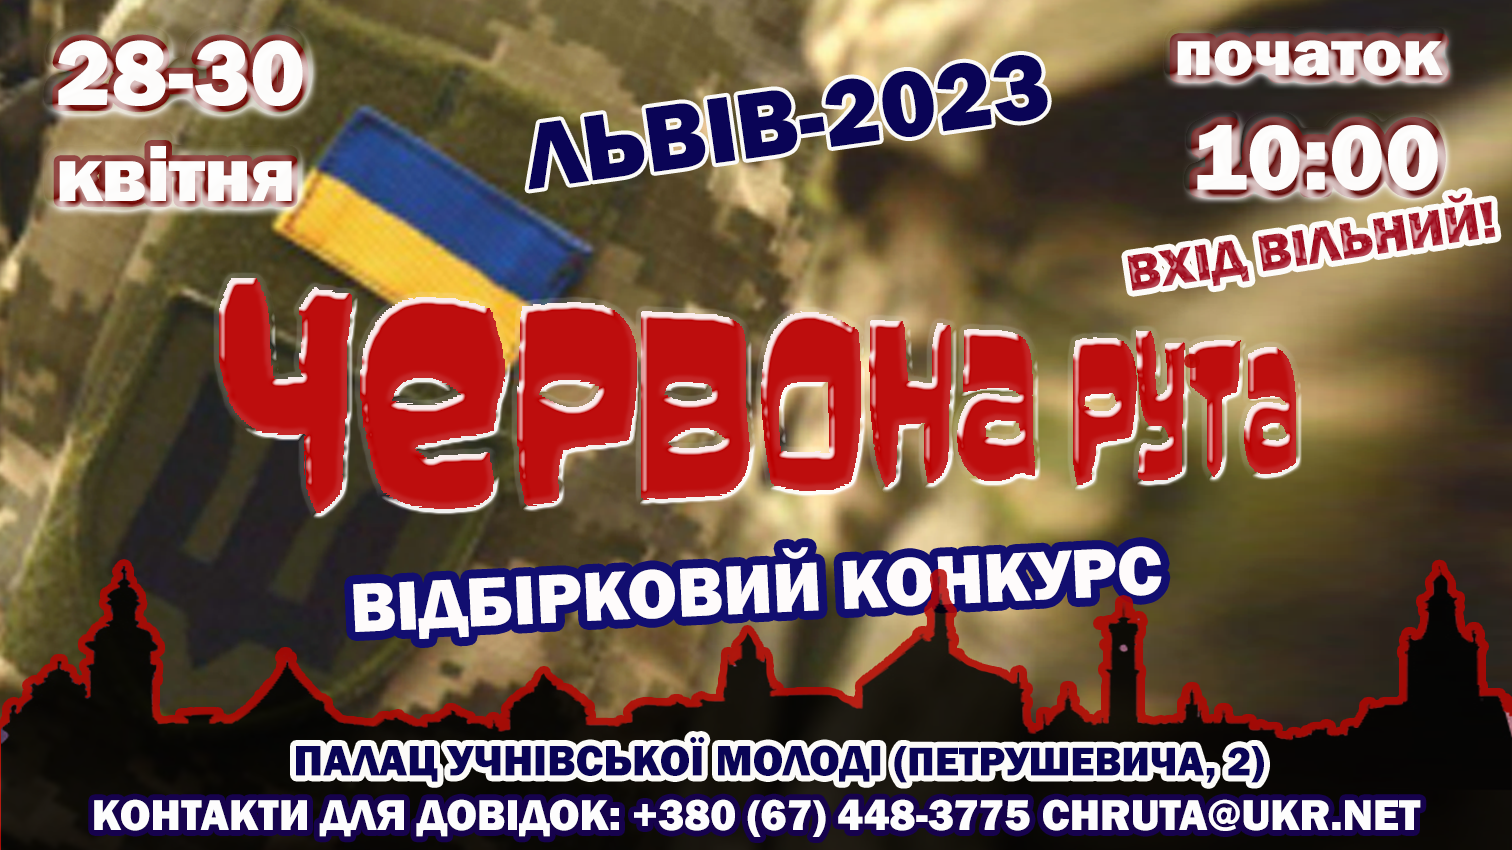 ЛЬВІВСЬКИЙ ВІДБІРКОВИЙ КОНКУРС RUTAFEST - 2023